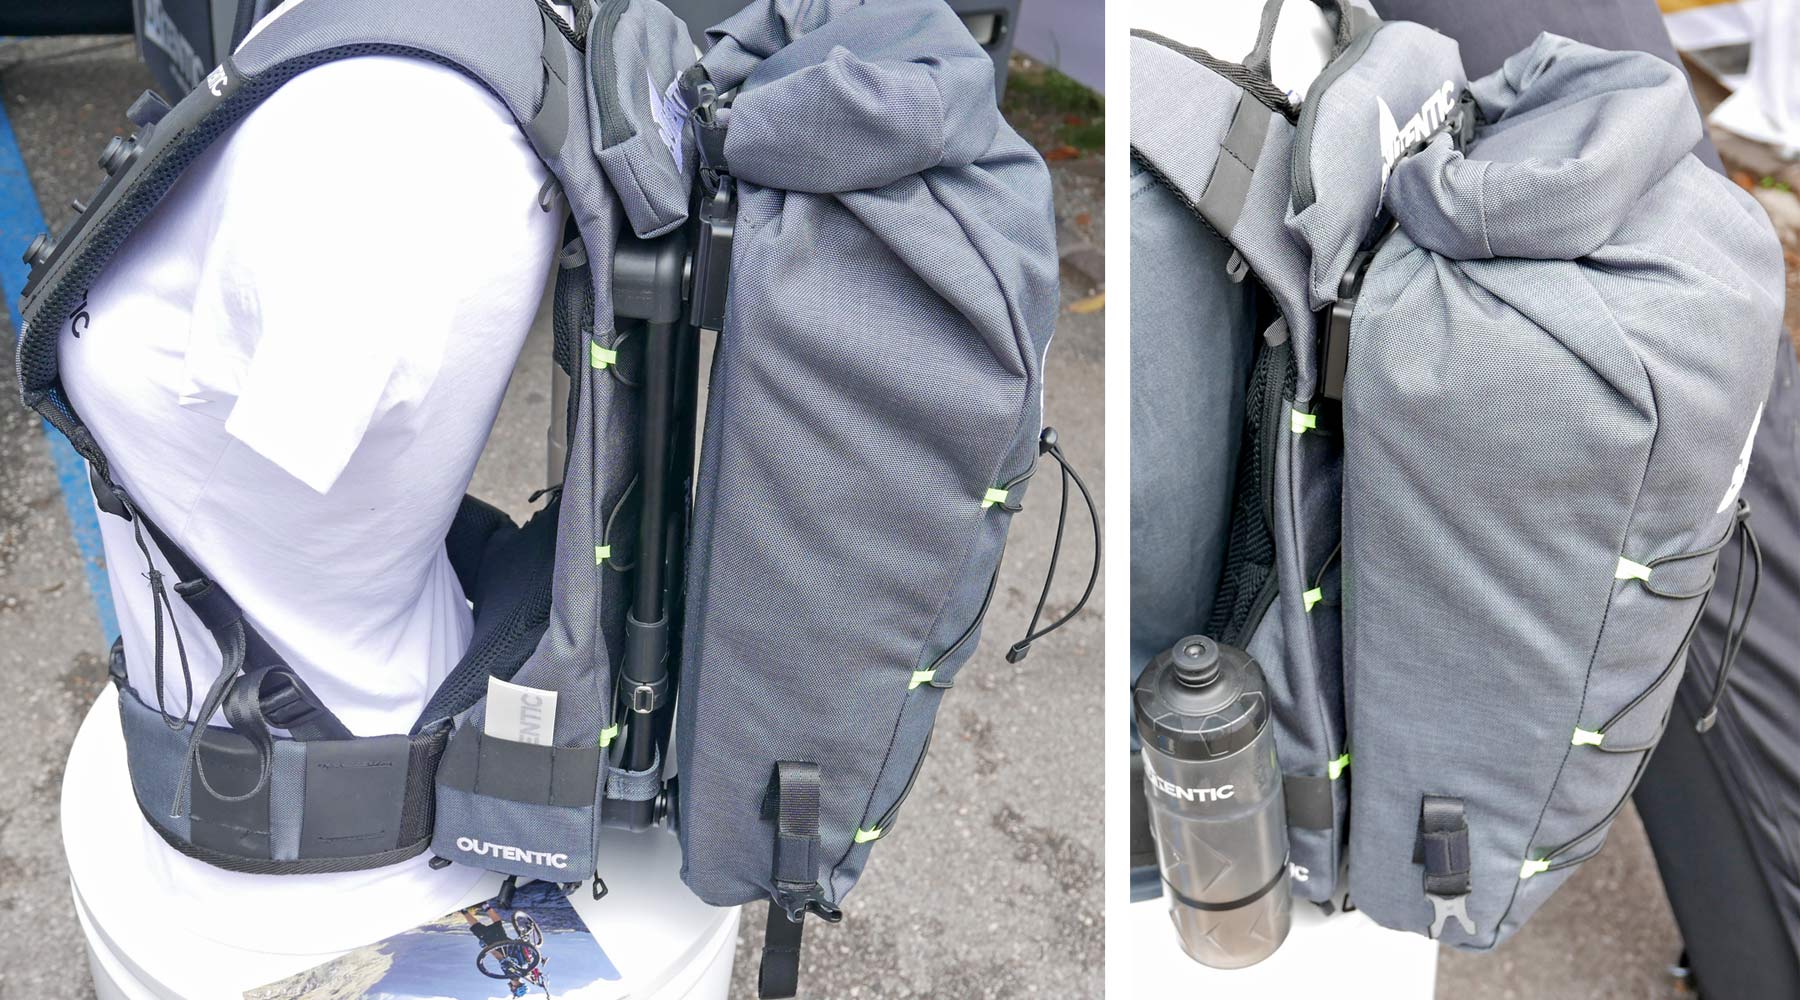 Outentic Hike And Bike backpack, modular Hike-a-Bike enduro mountain bike portaging backpack system, carry a bike